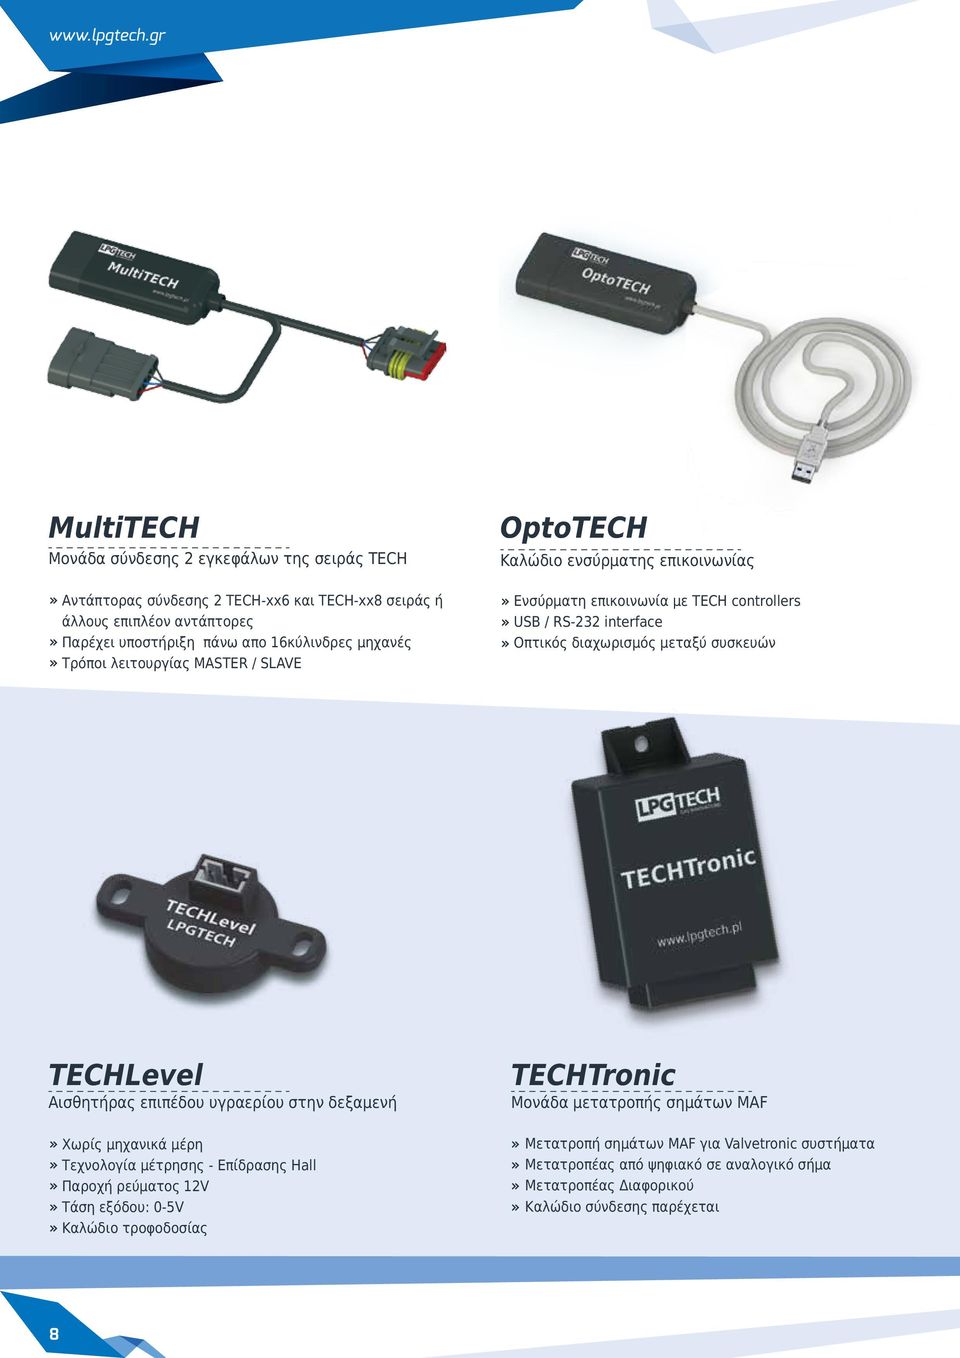 μηχανές Τρόποι λειτουργίας MASTER / SLAVE OptoTECH Καλώδιο ενσύρματης επικοινωνίας Ενσύρματη επικοινωνία με TECH controllers USB / RS-232 interface Οπτικός διαχωρισμός μεταξύ